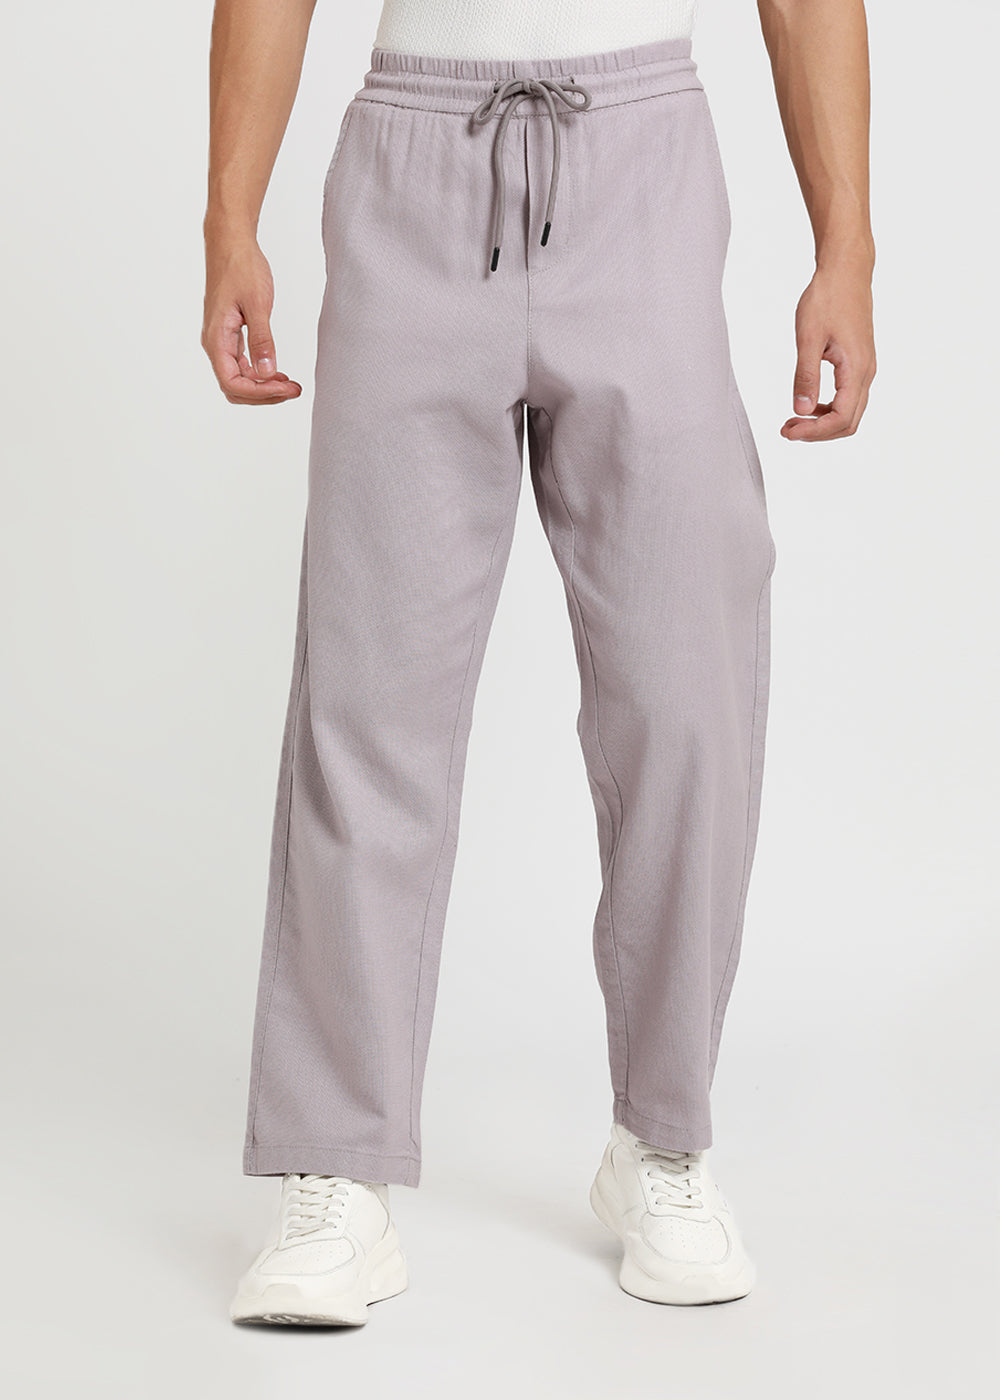 Pastel Lavender Textured Pants